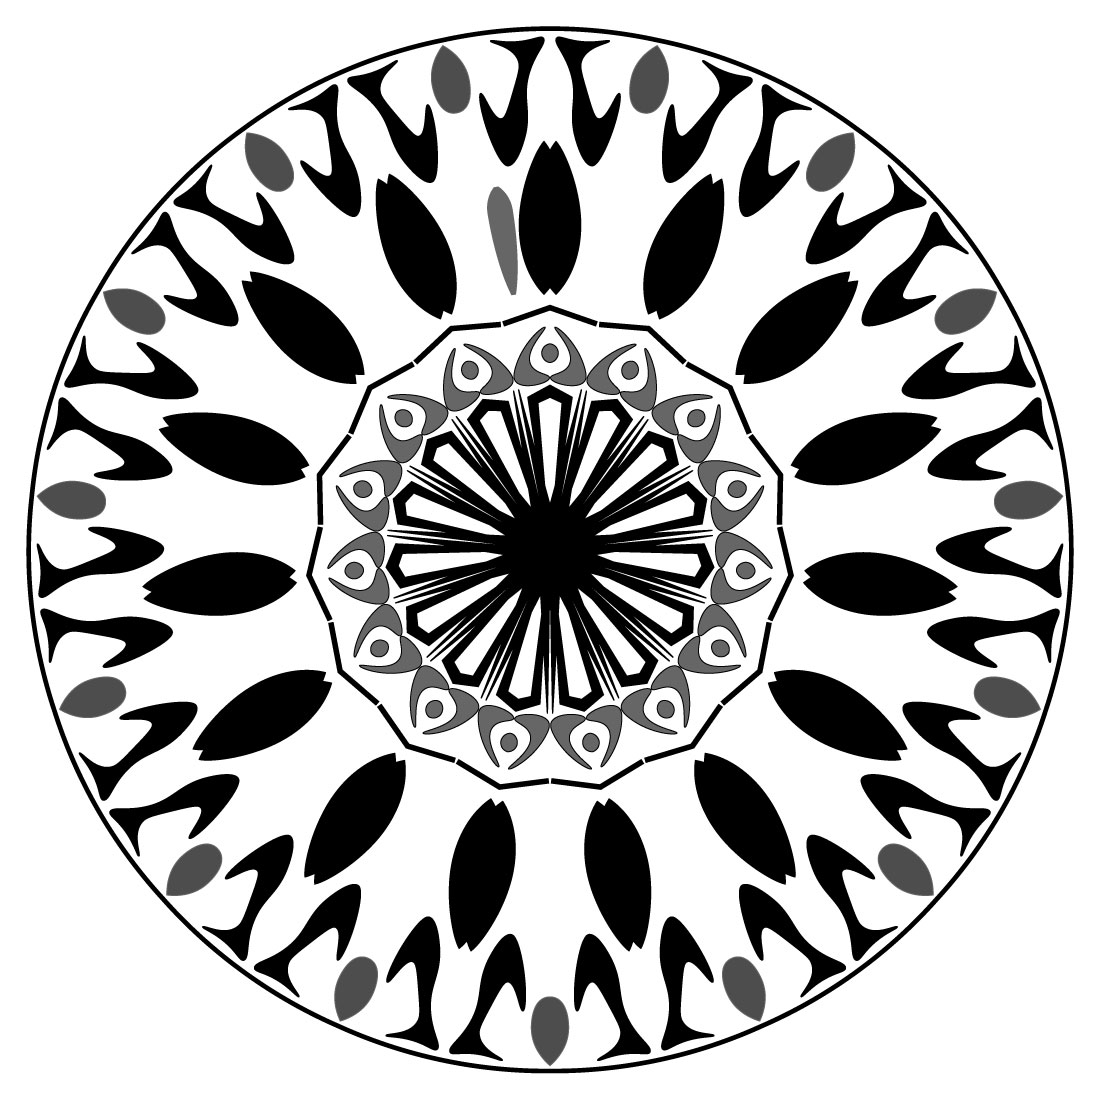 Mandala-art-with-fish-and-circuls cover image.